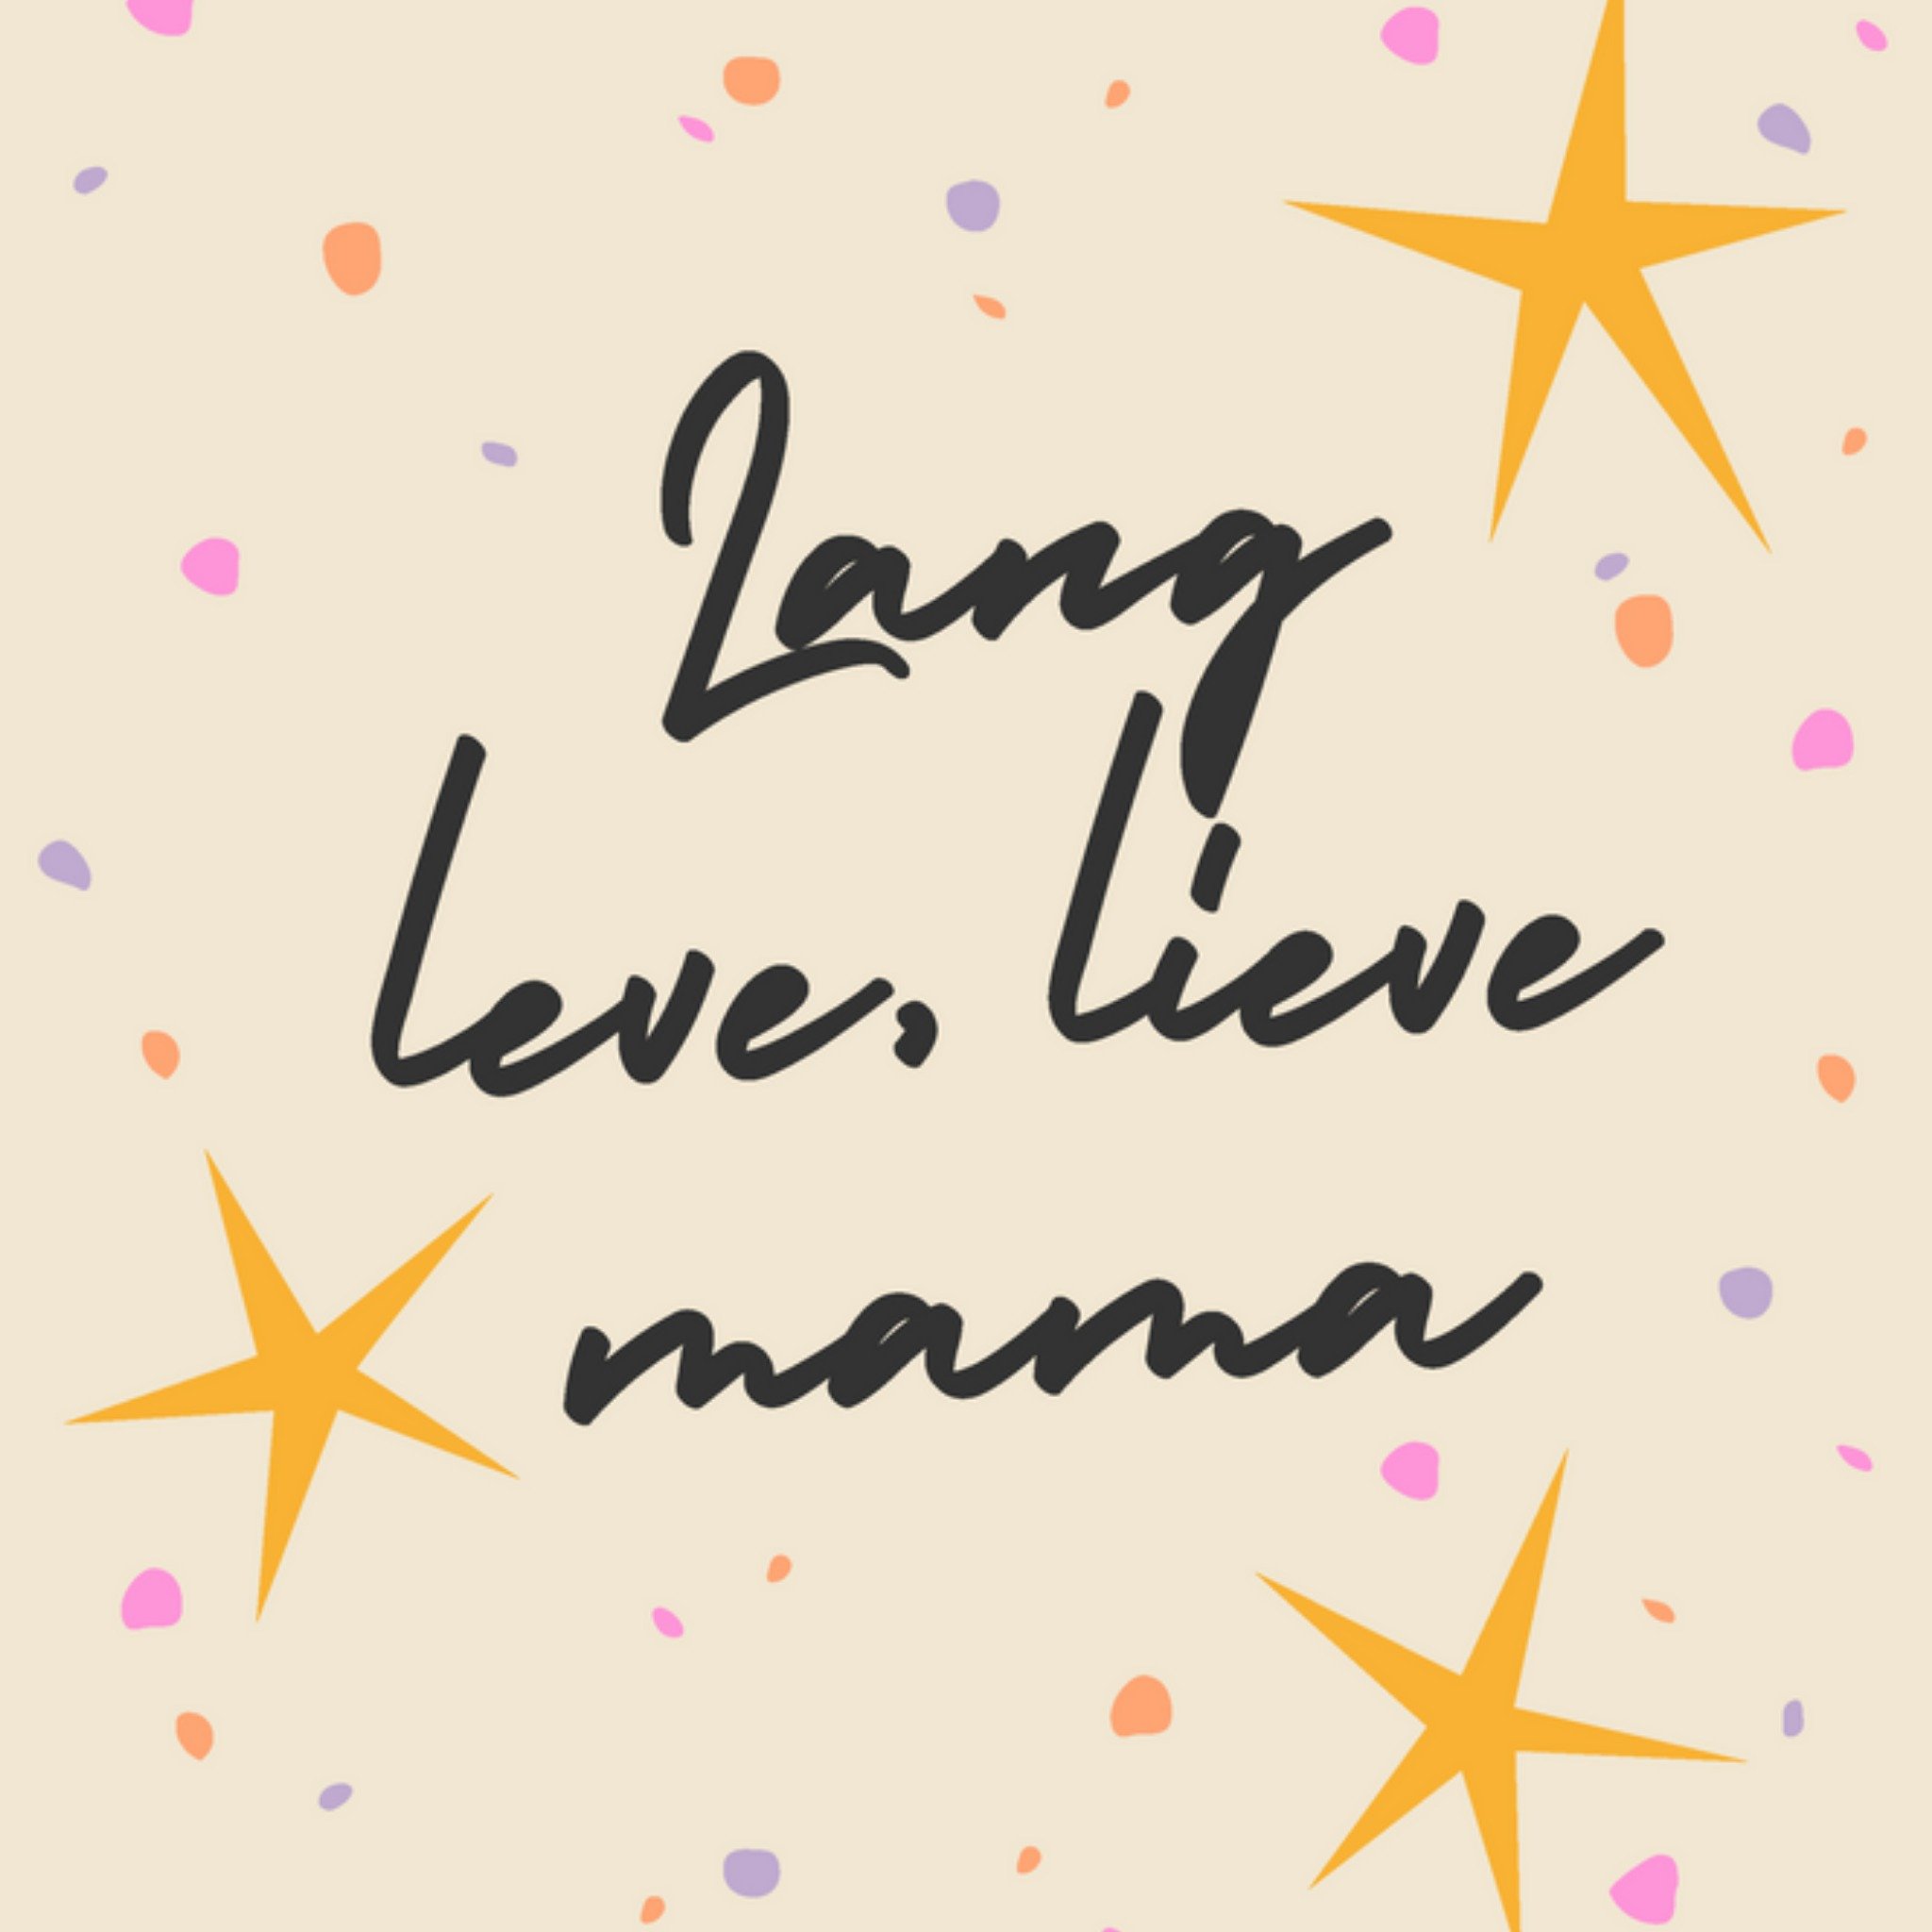 Verjaardagskaart - Lang leve, lieve Mama